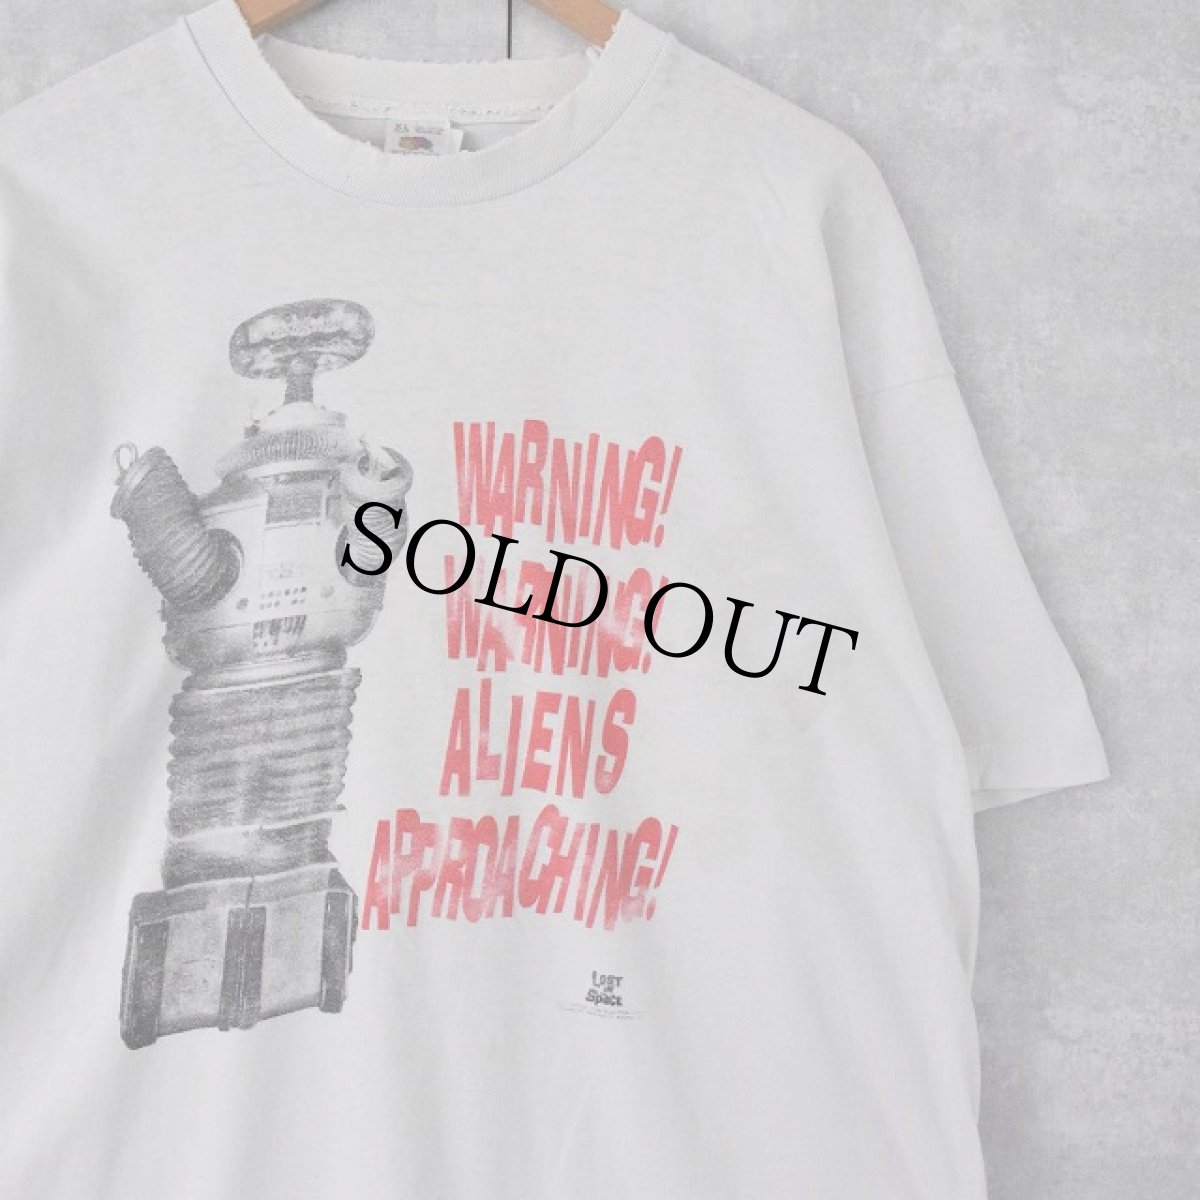 画像1: 90's LOST IN SPACE USA製 SFドラマプリントTシャツ XL (1)